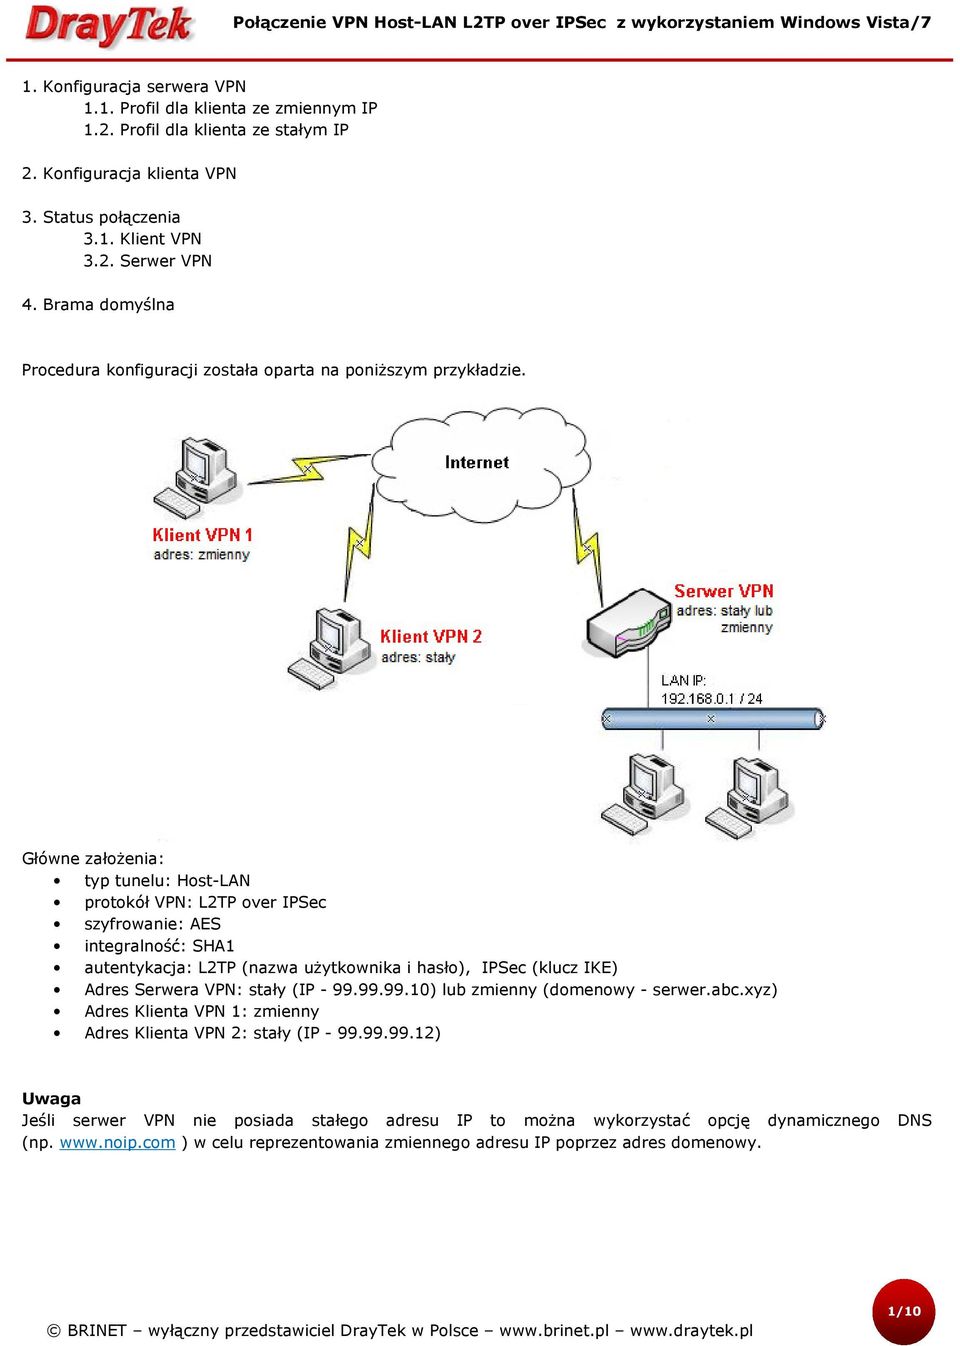 Główne założenia: typ tunelu: Host-LAN protokół VPN: L2TP over IPSec szyfrowanie: AES integralność: SHA1 autentykacja: L2TP (nazwa użytkownika i hasło), IPSec (klucz IKE) Adres Serwera VPN: stały